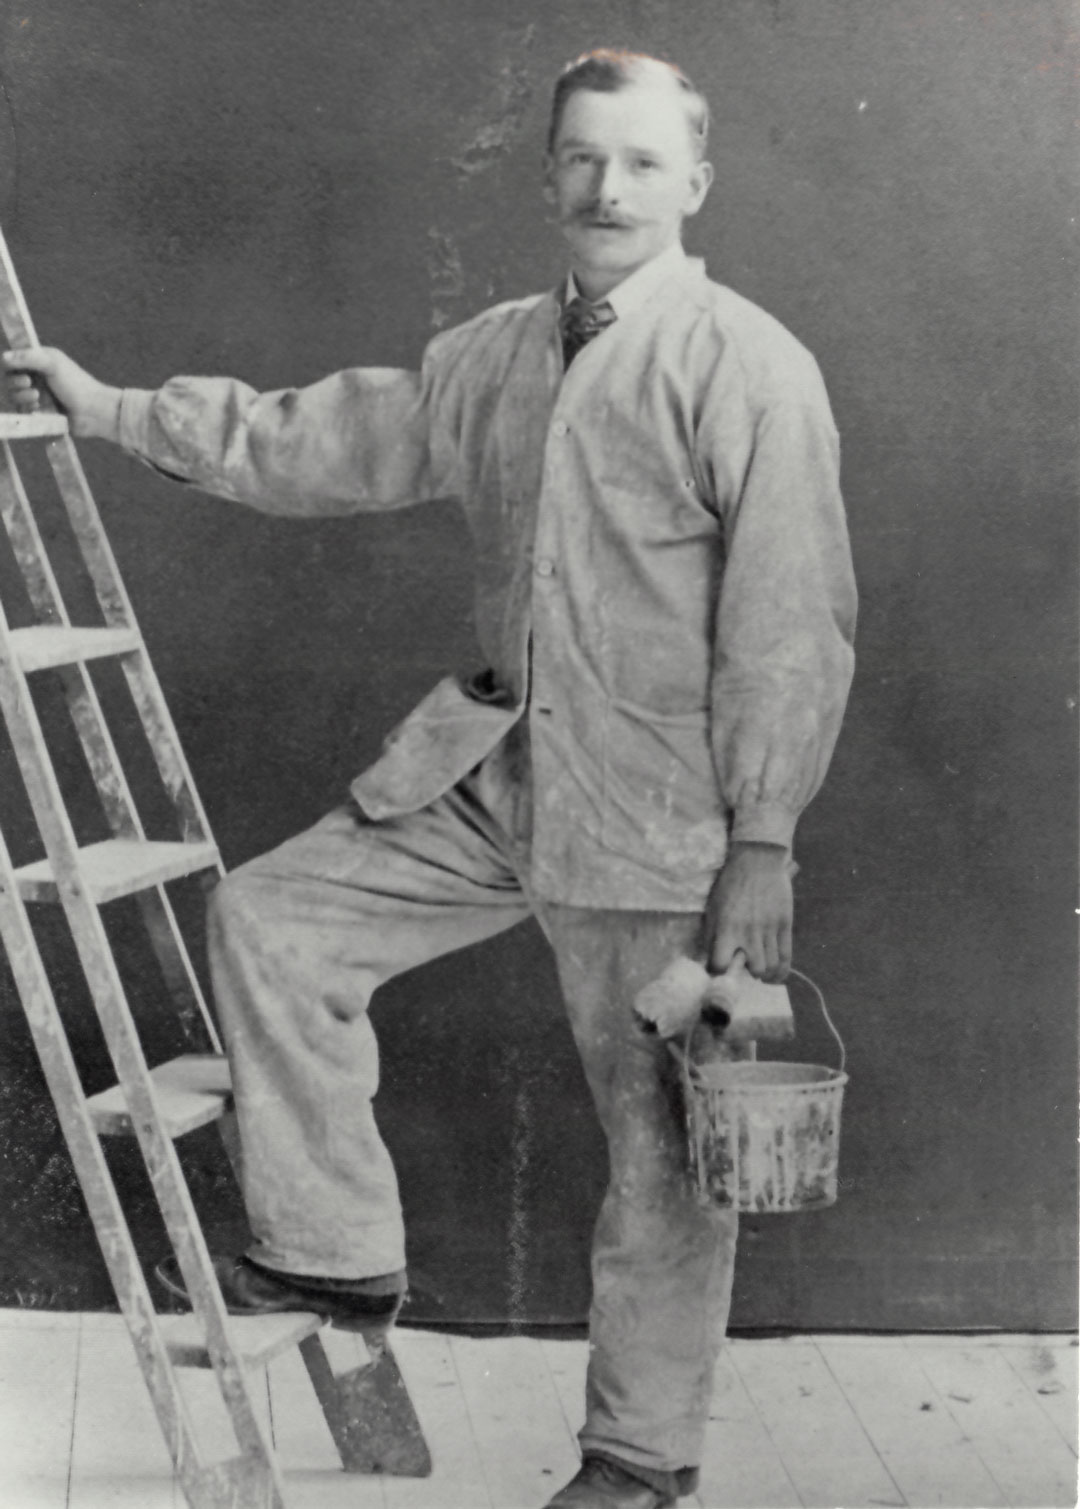 Ensam målare poserar med en fot och hand på en stege, i andra handen har han färgburk och penslar.